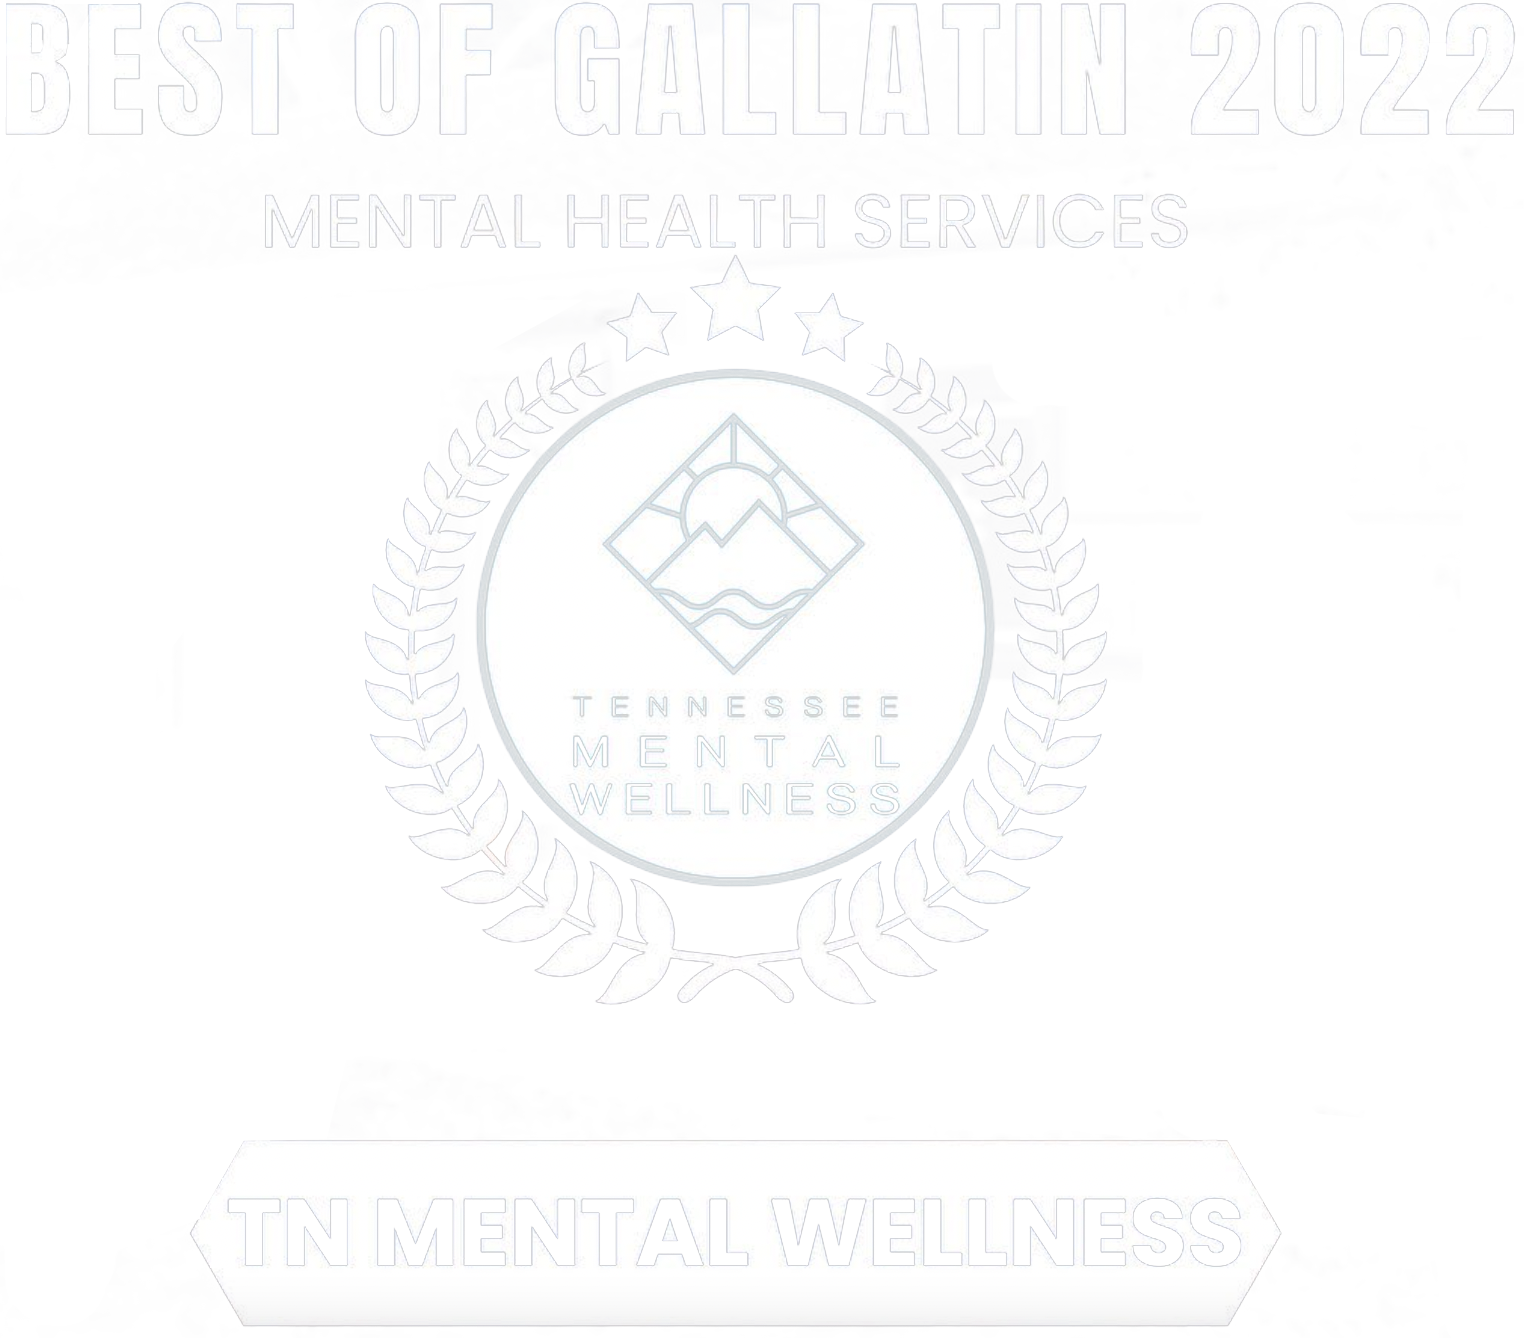 TN Mental Wellness Best of Gallatin 2022